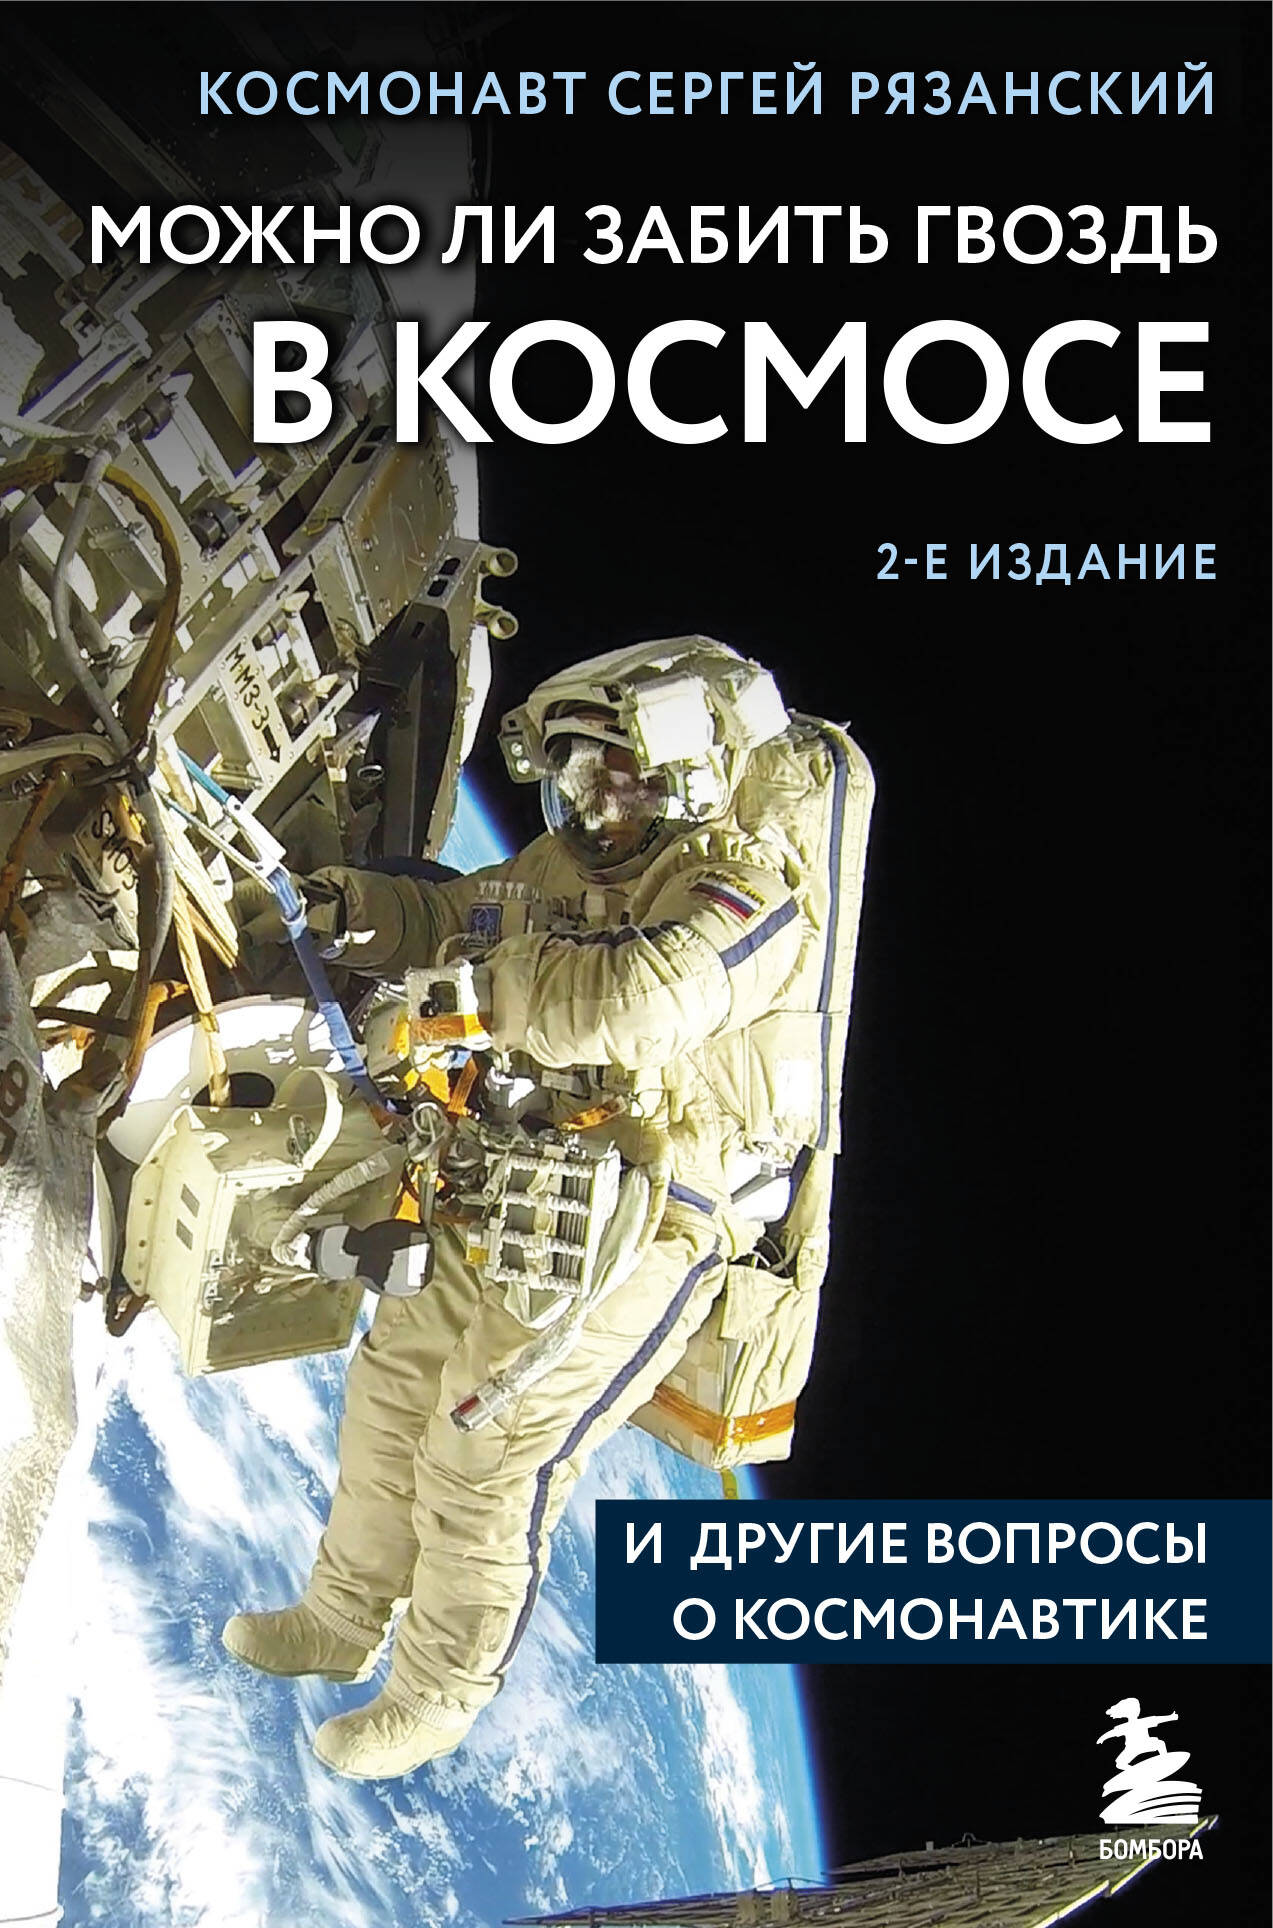  книга Можно ли забить гвоздь в космосе и другие вопросы о космонавтике. 2-е издание